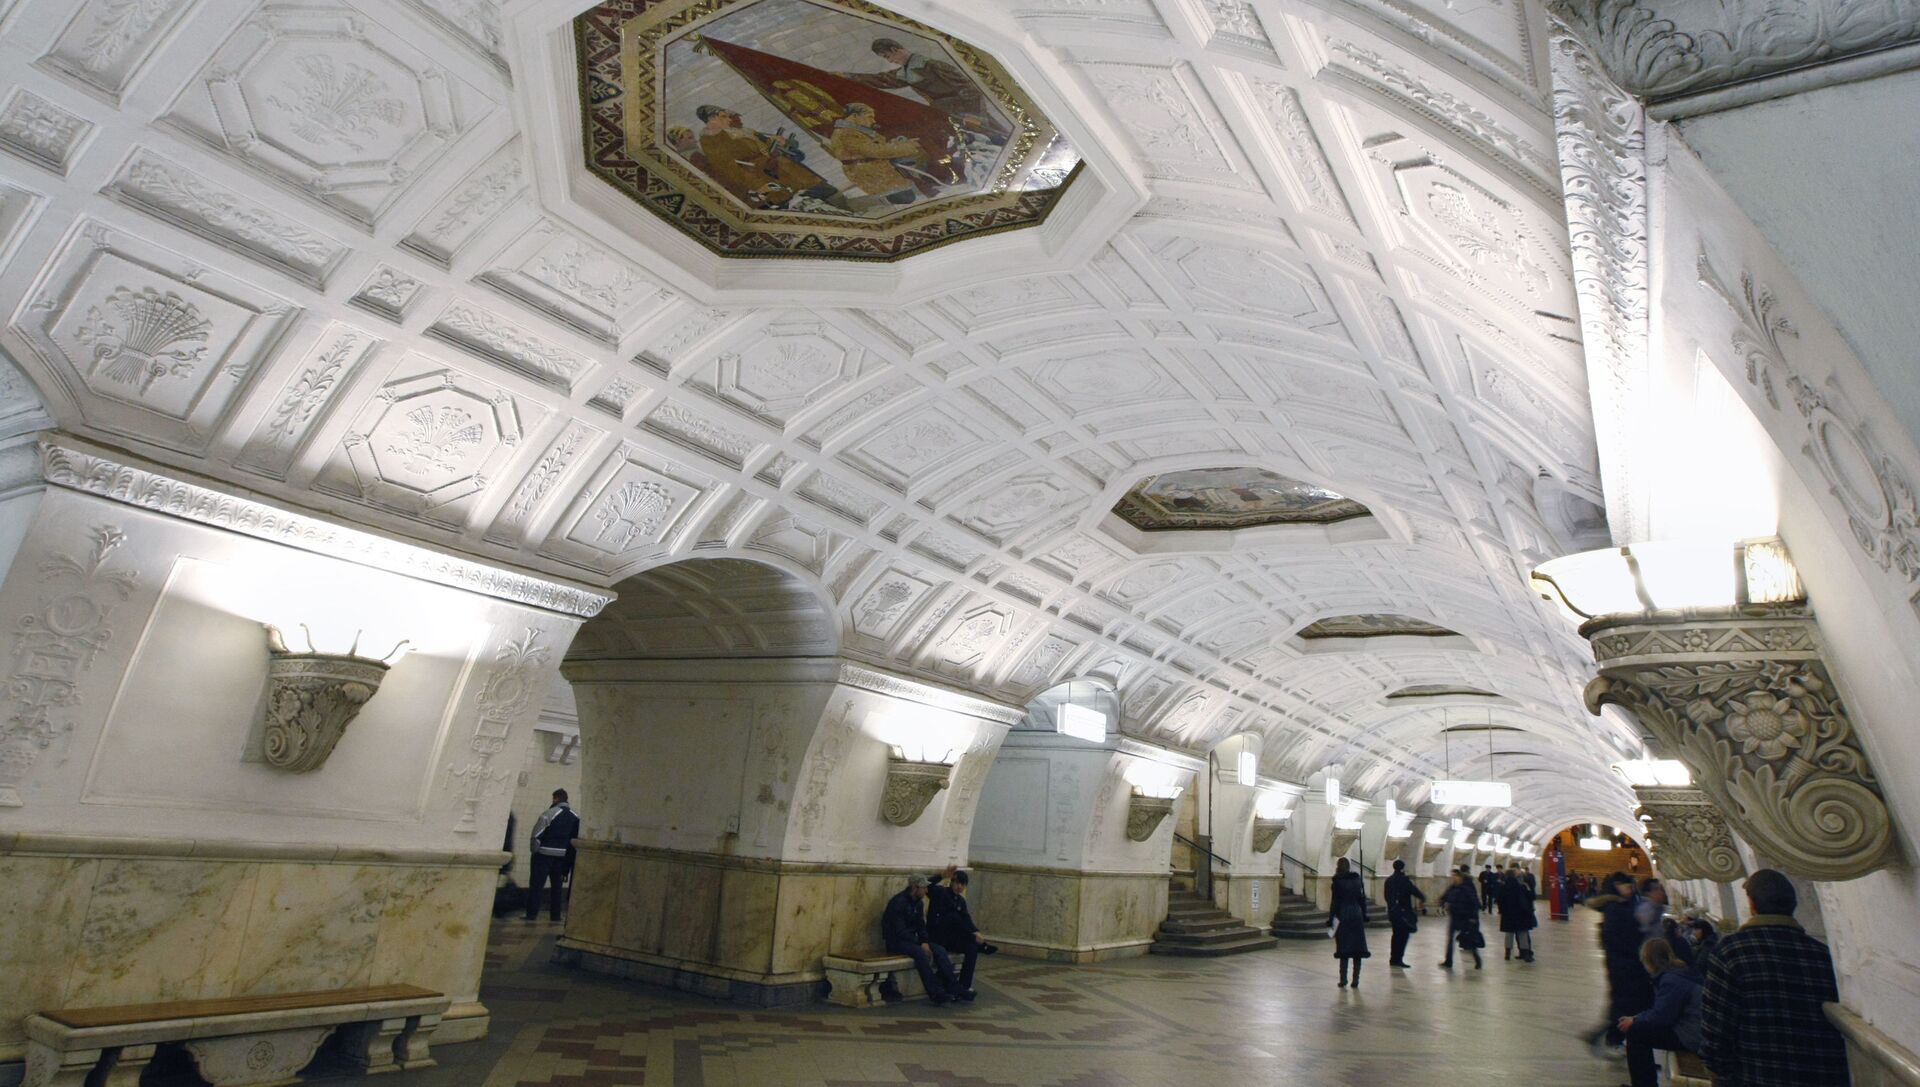 Белорусская станция метро кольцевая линия фото